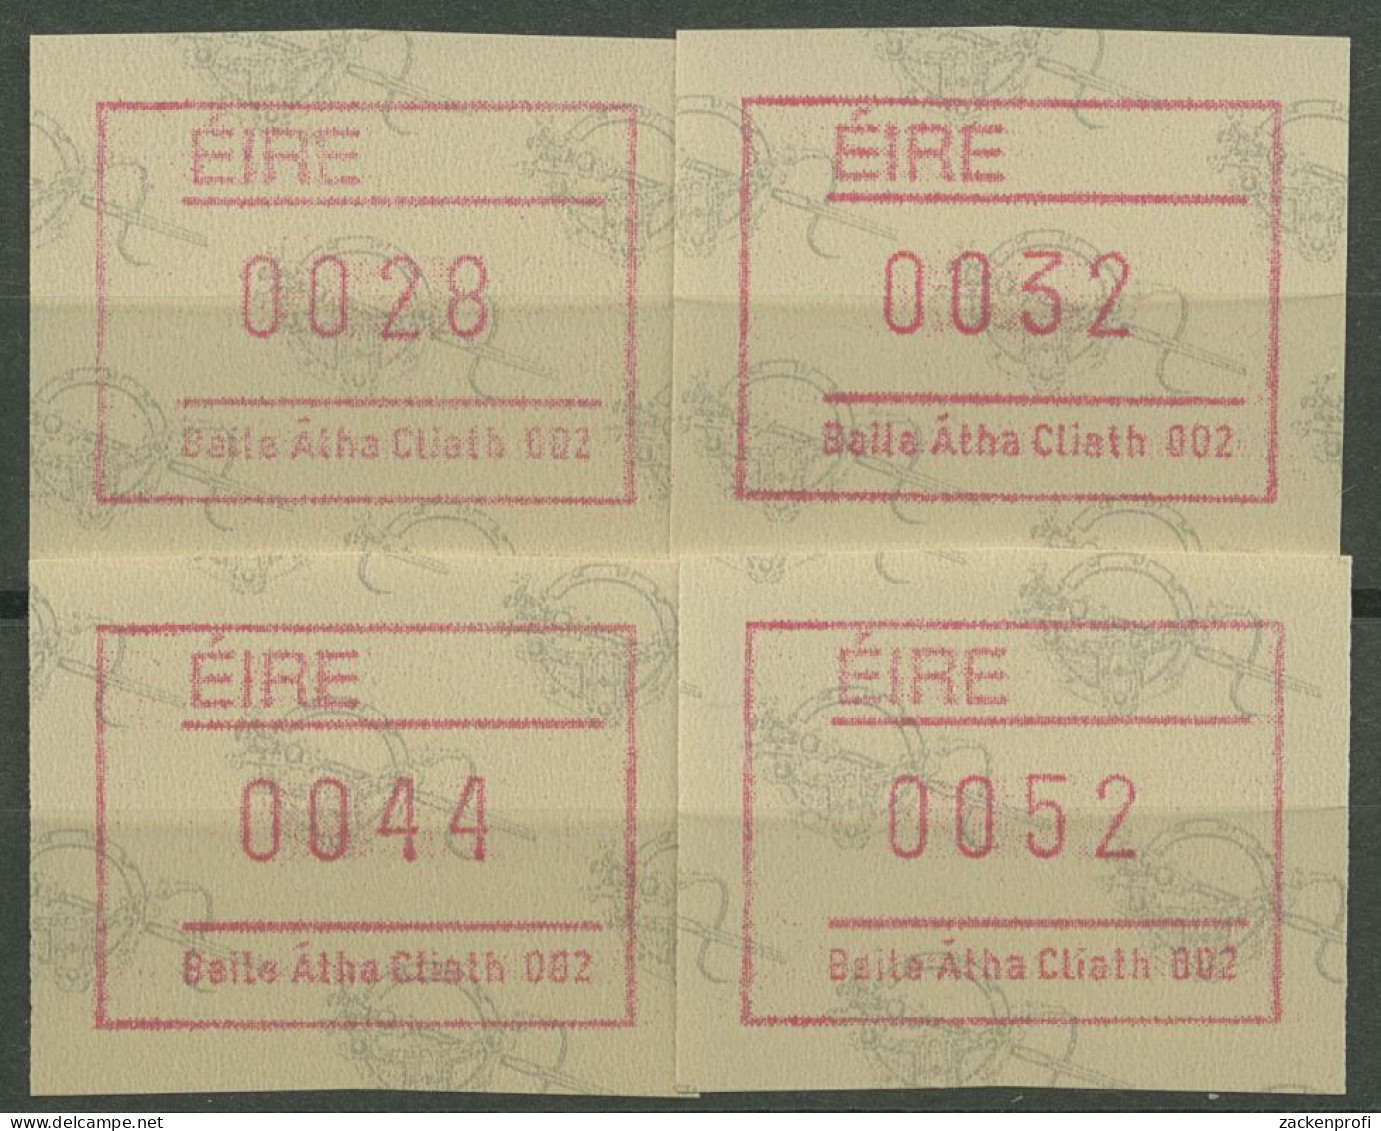 Irland Automatenmarken 1992 Satz 4 Werte Automat 002 ATM 4.2 S2 Postfrisch - Automatenmarken (Frama)